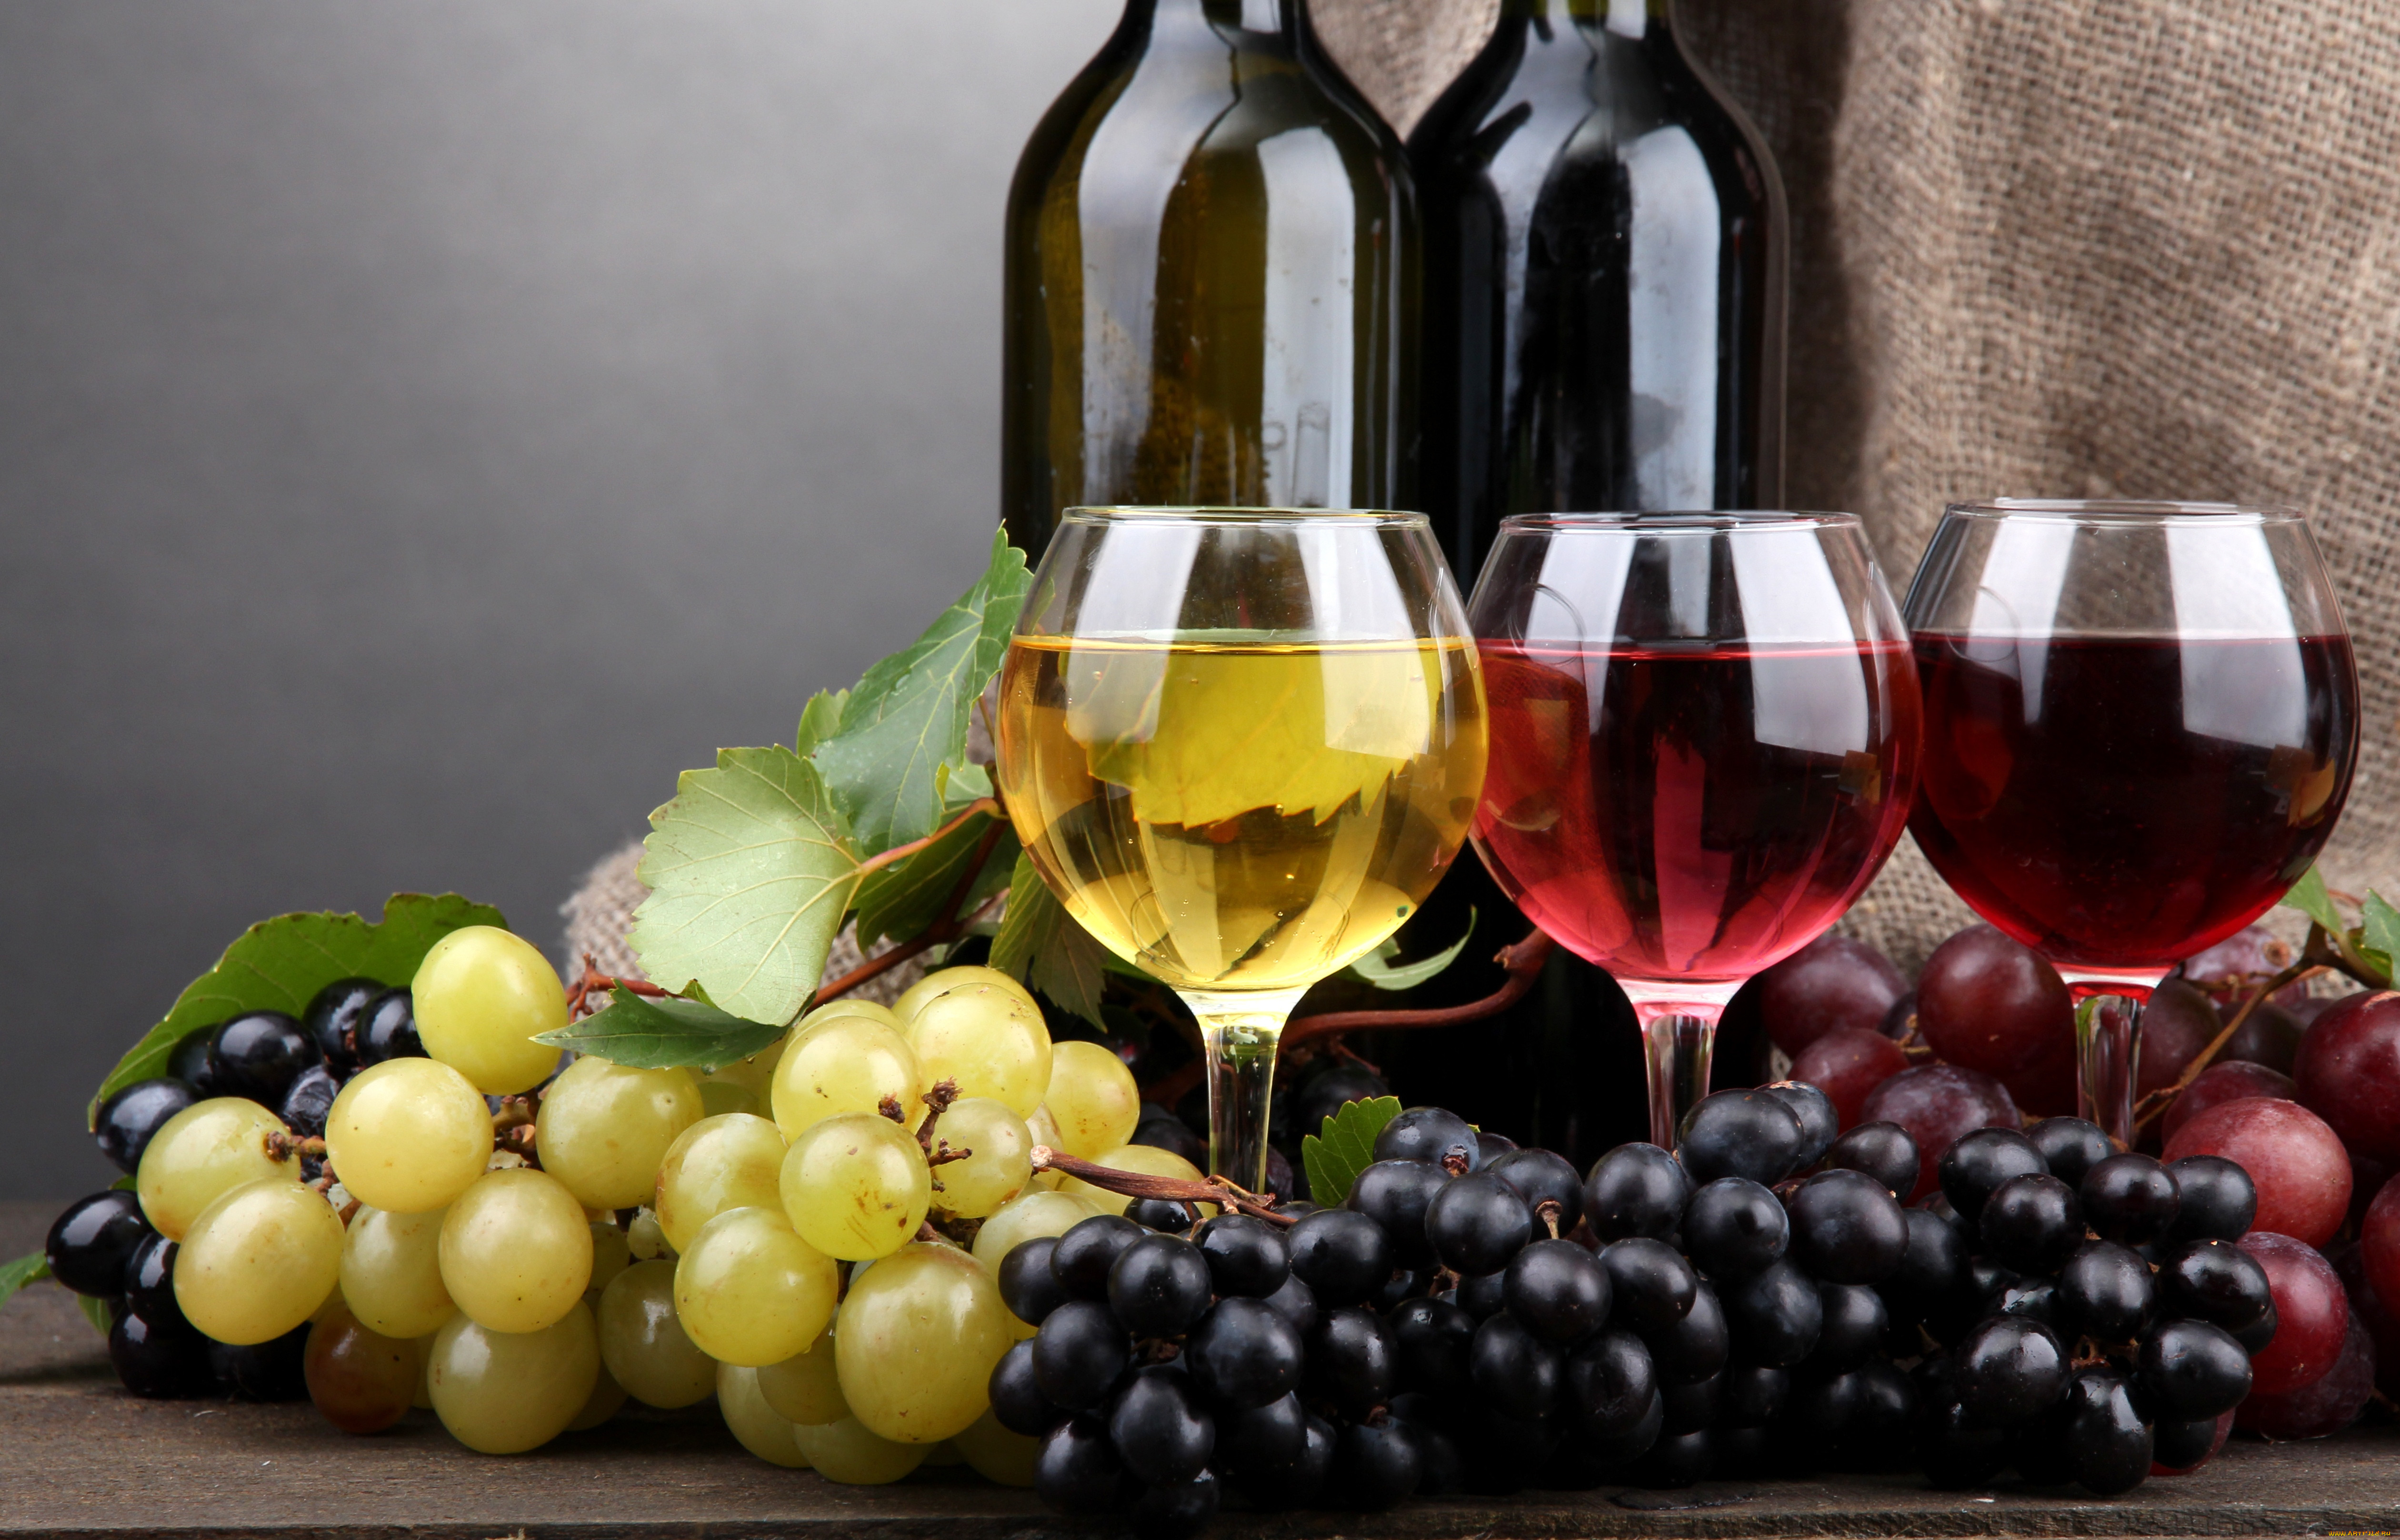 Сорта винограда, которые лучше всего сочетаются с мясом + советы по выбору вина